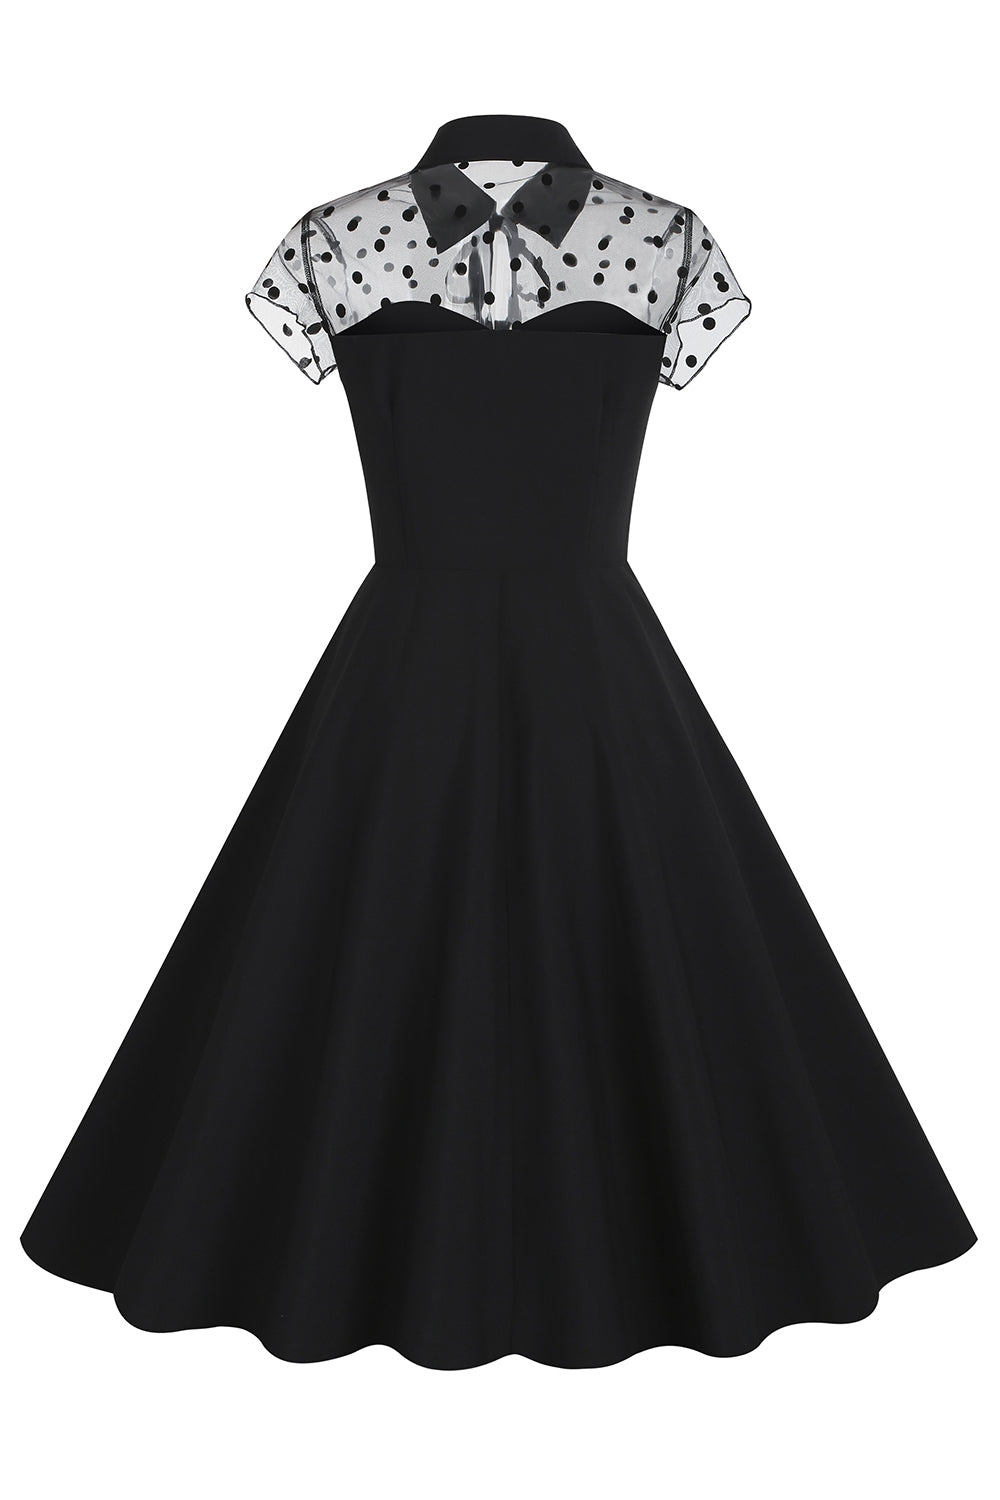 Hepburn Style Black Vintage Dress with Short Sleeves